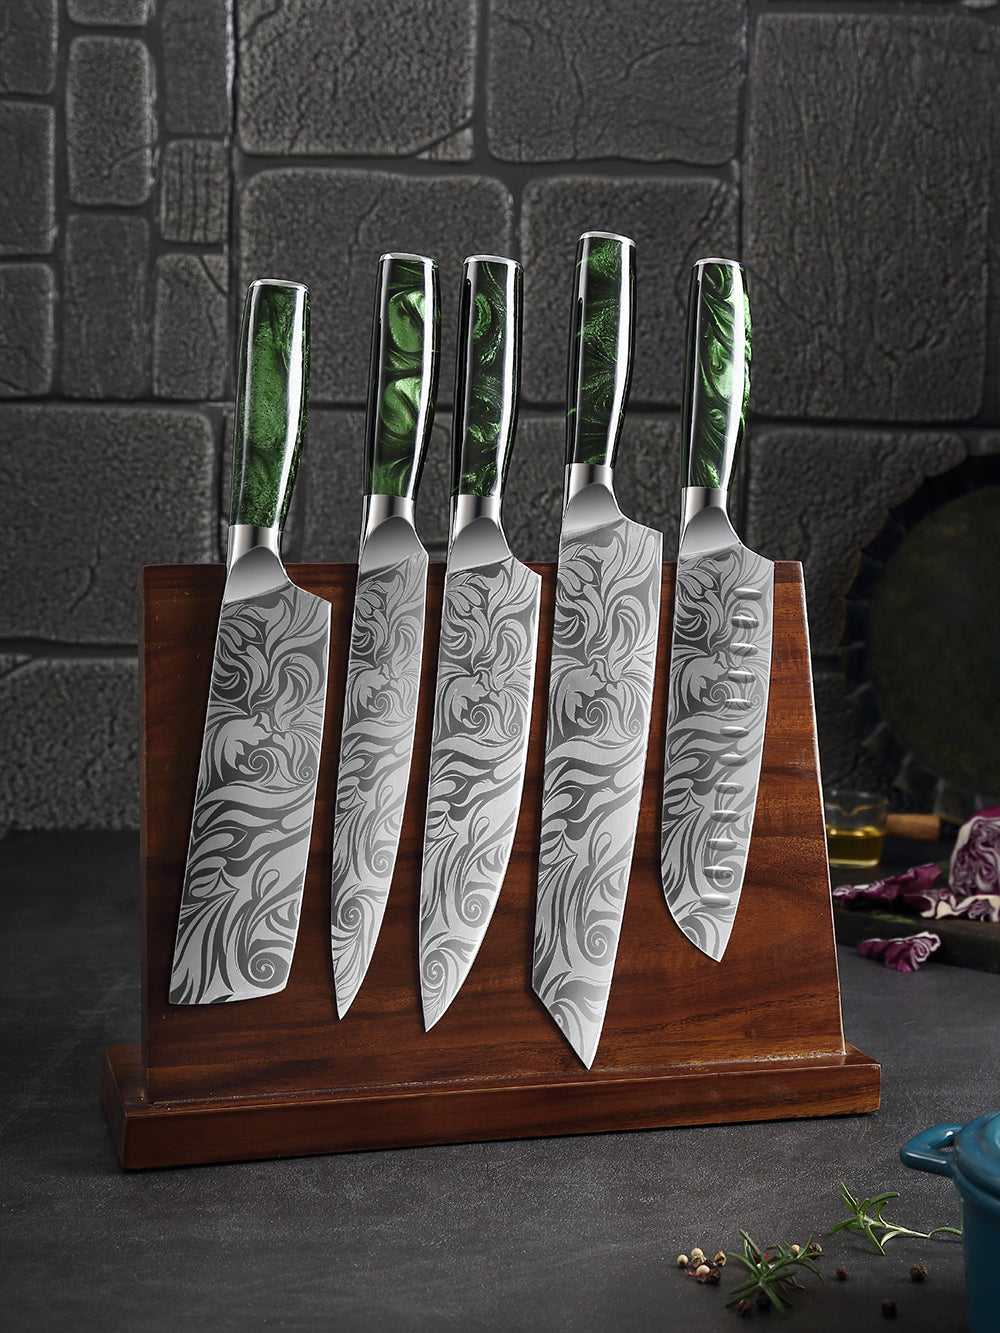 8pcs knife set